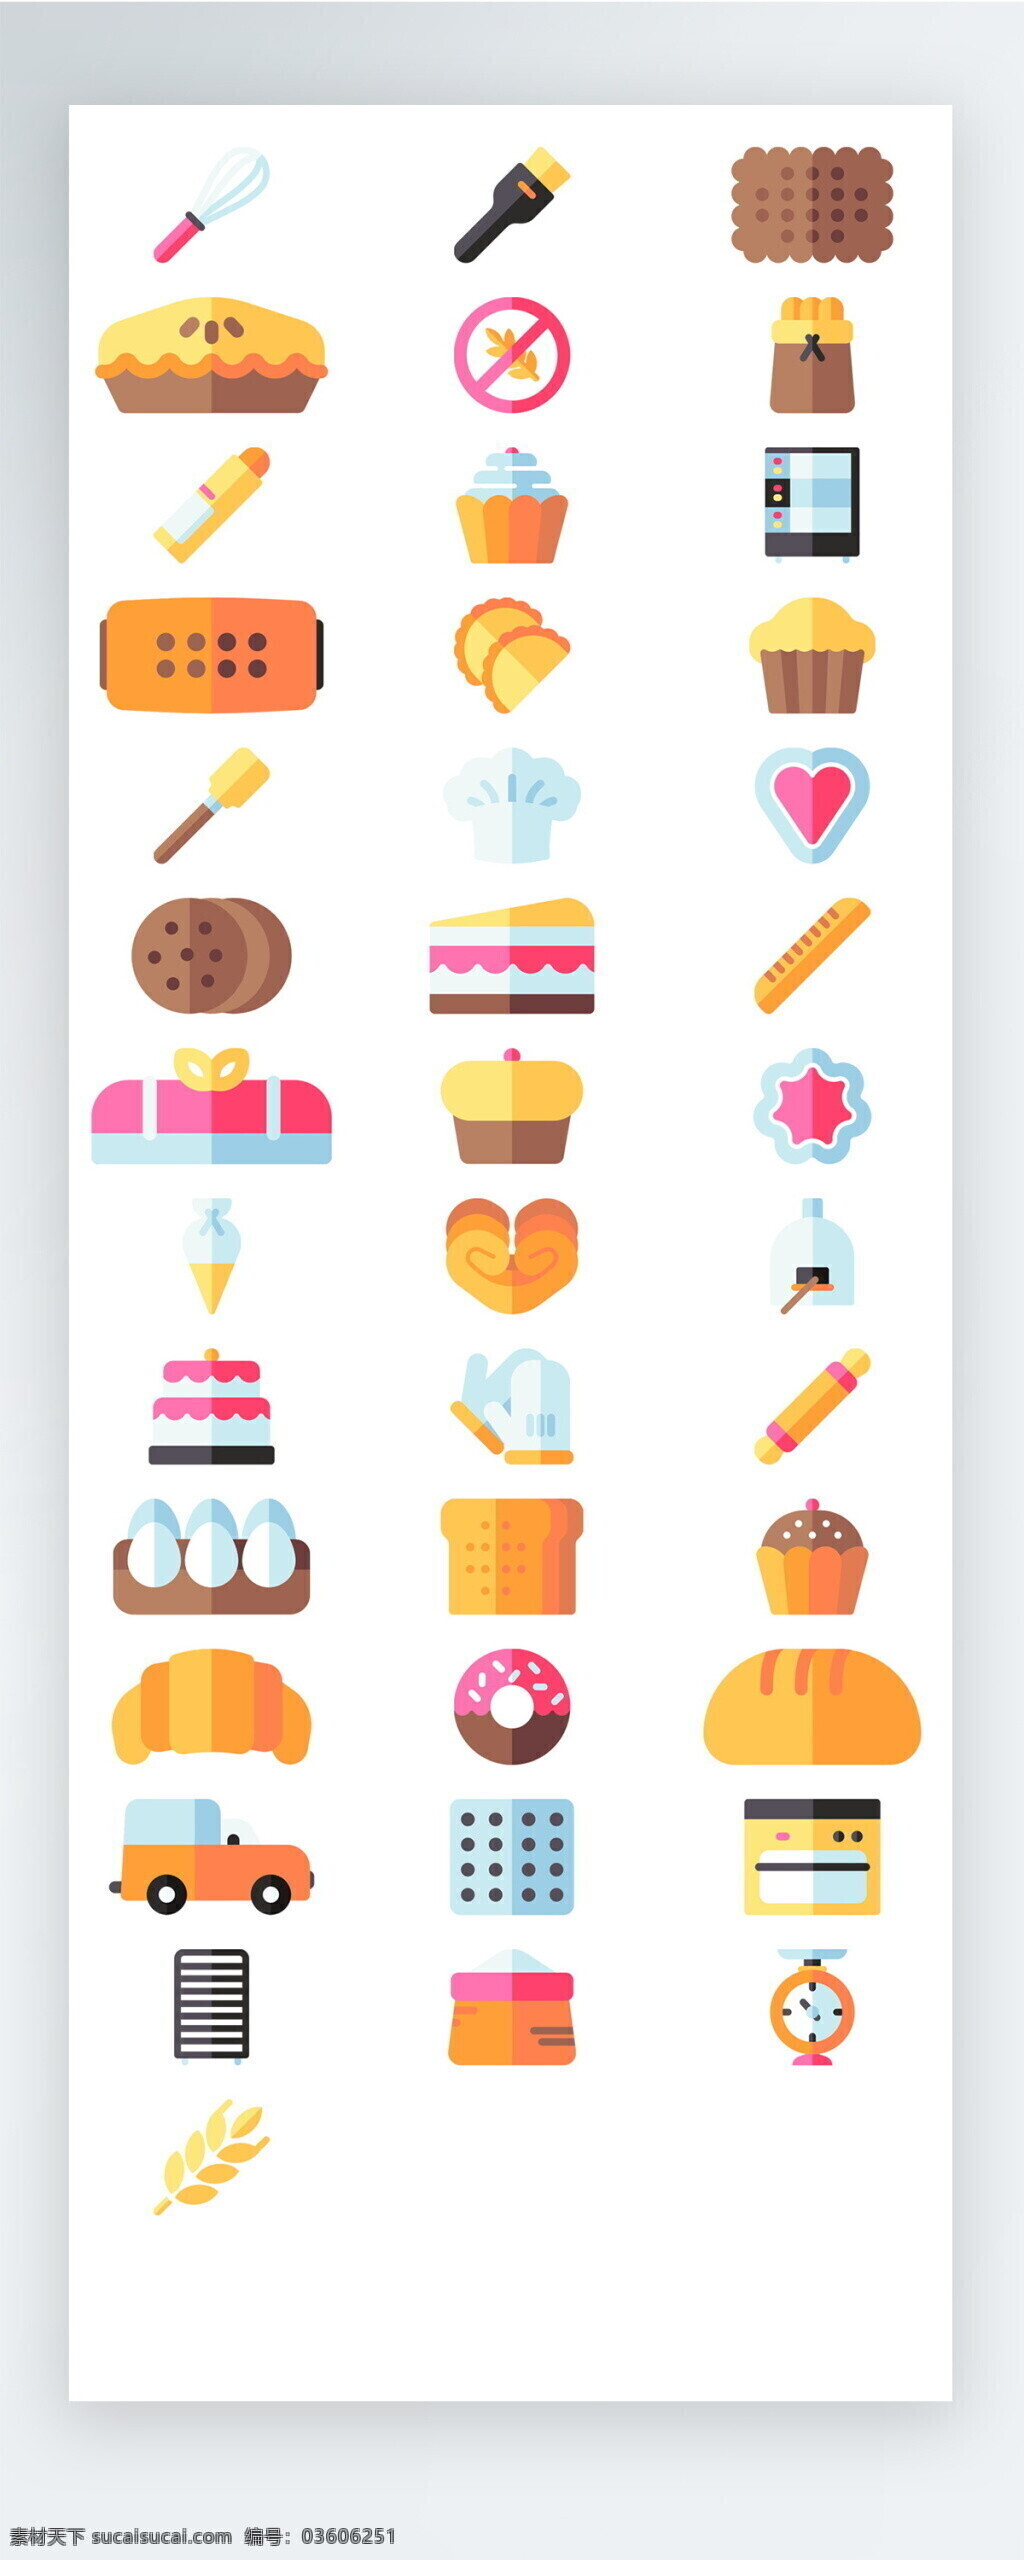 彩色 餐饮 食物 图标 矢量 icon icon图标 ui 手机 拟物 面包 蛋糕 烘焙